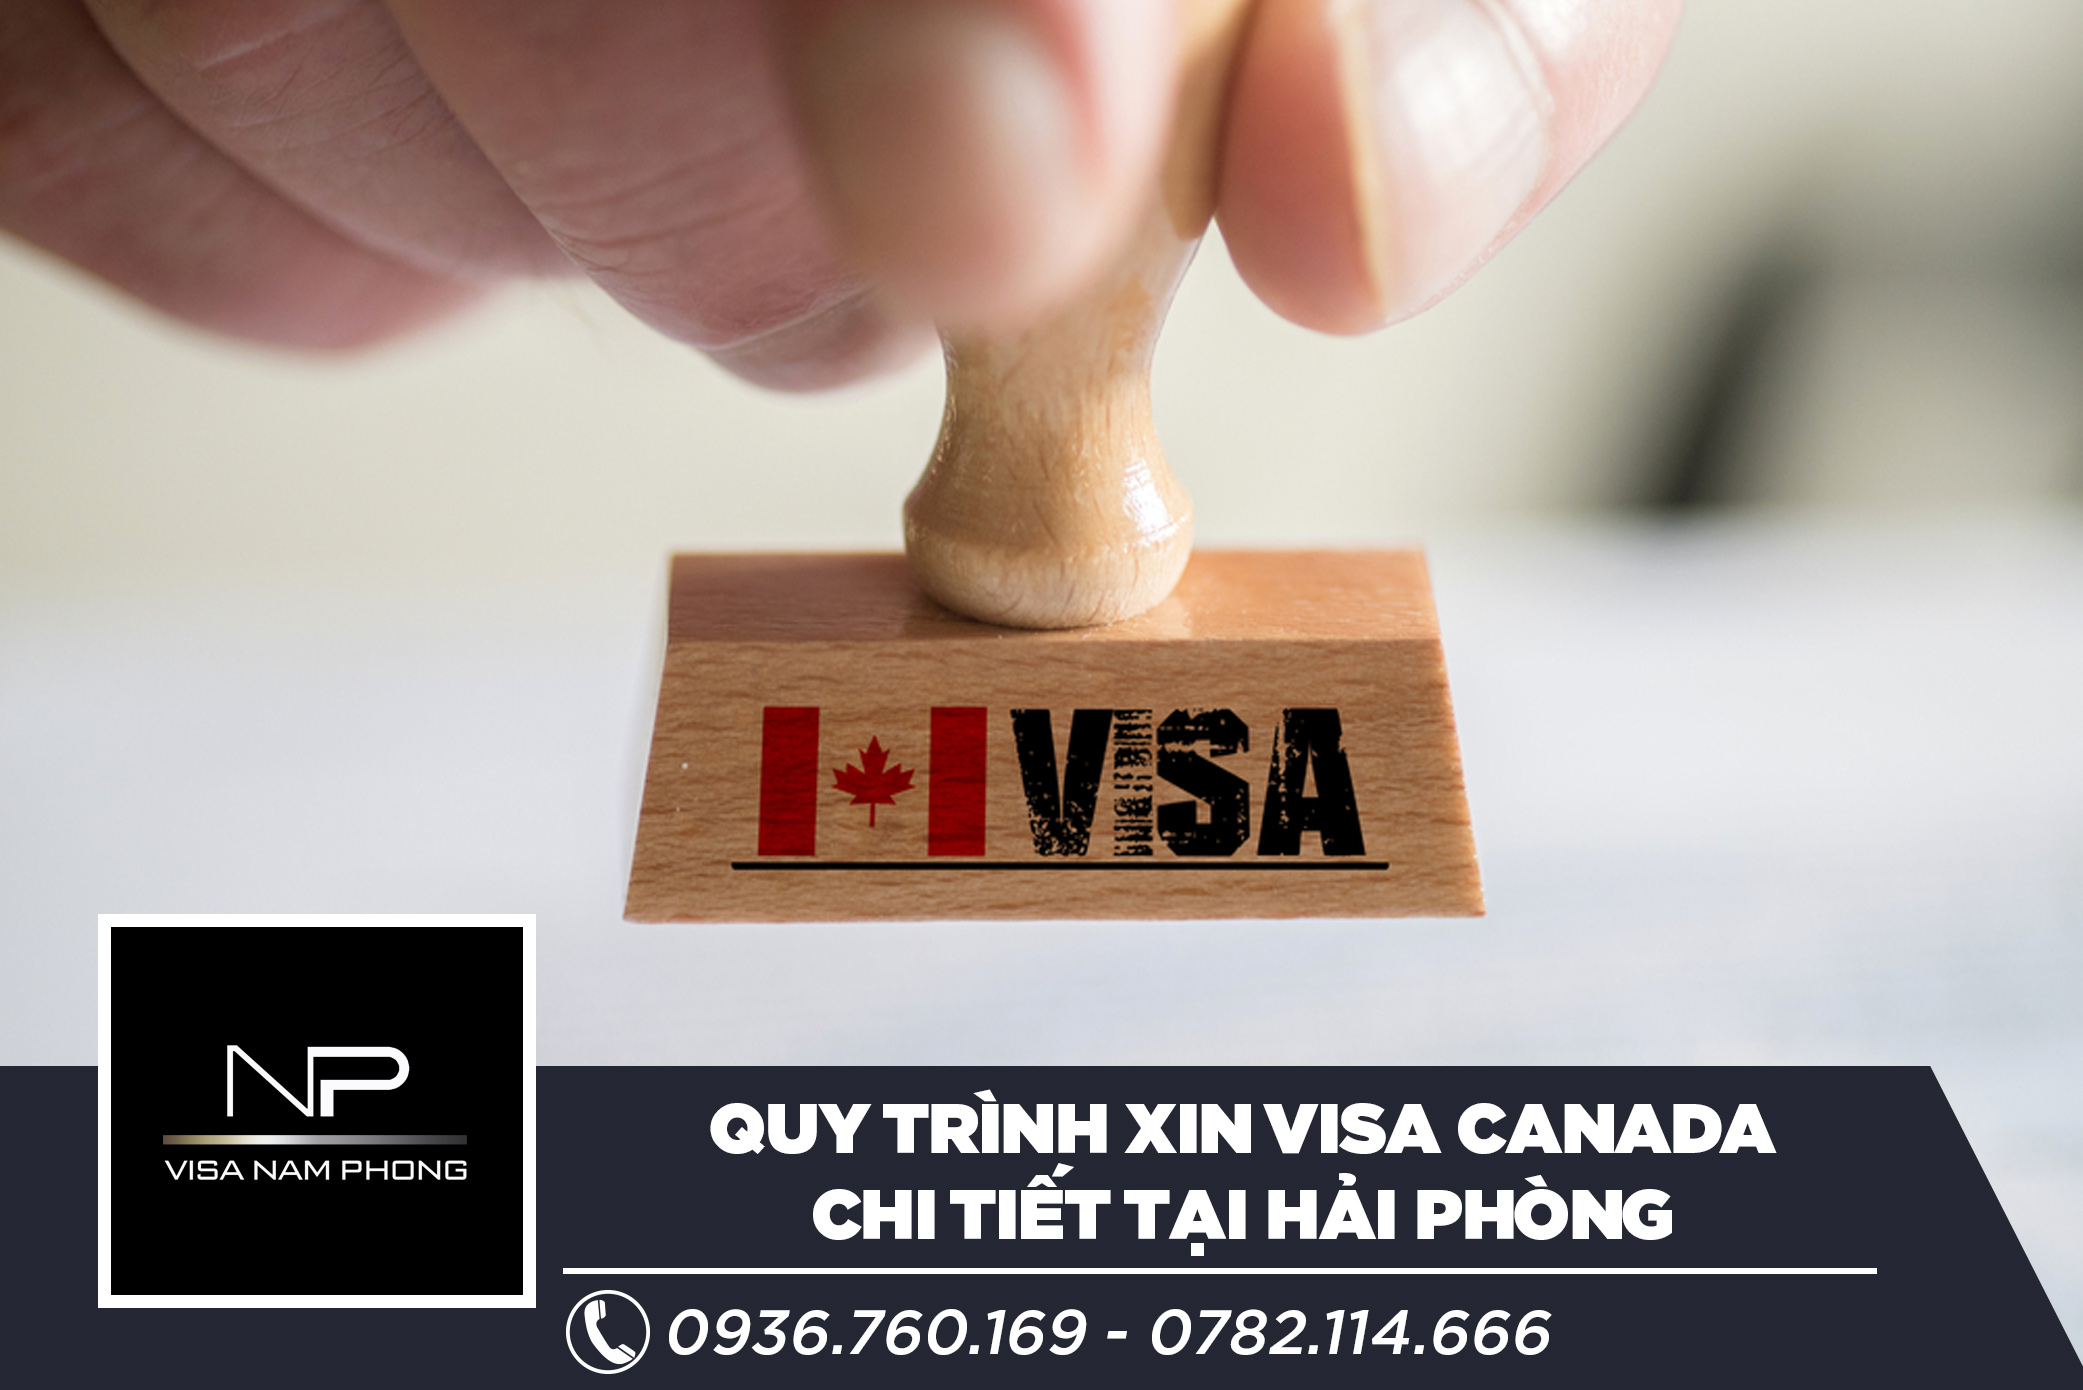 Quy trình xin visa Canada chi tiết tại Hải Phòng